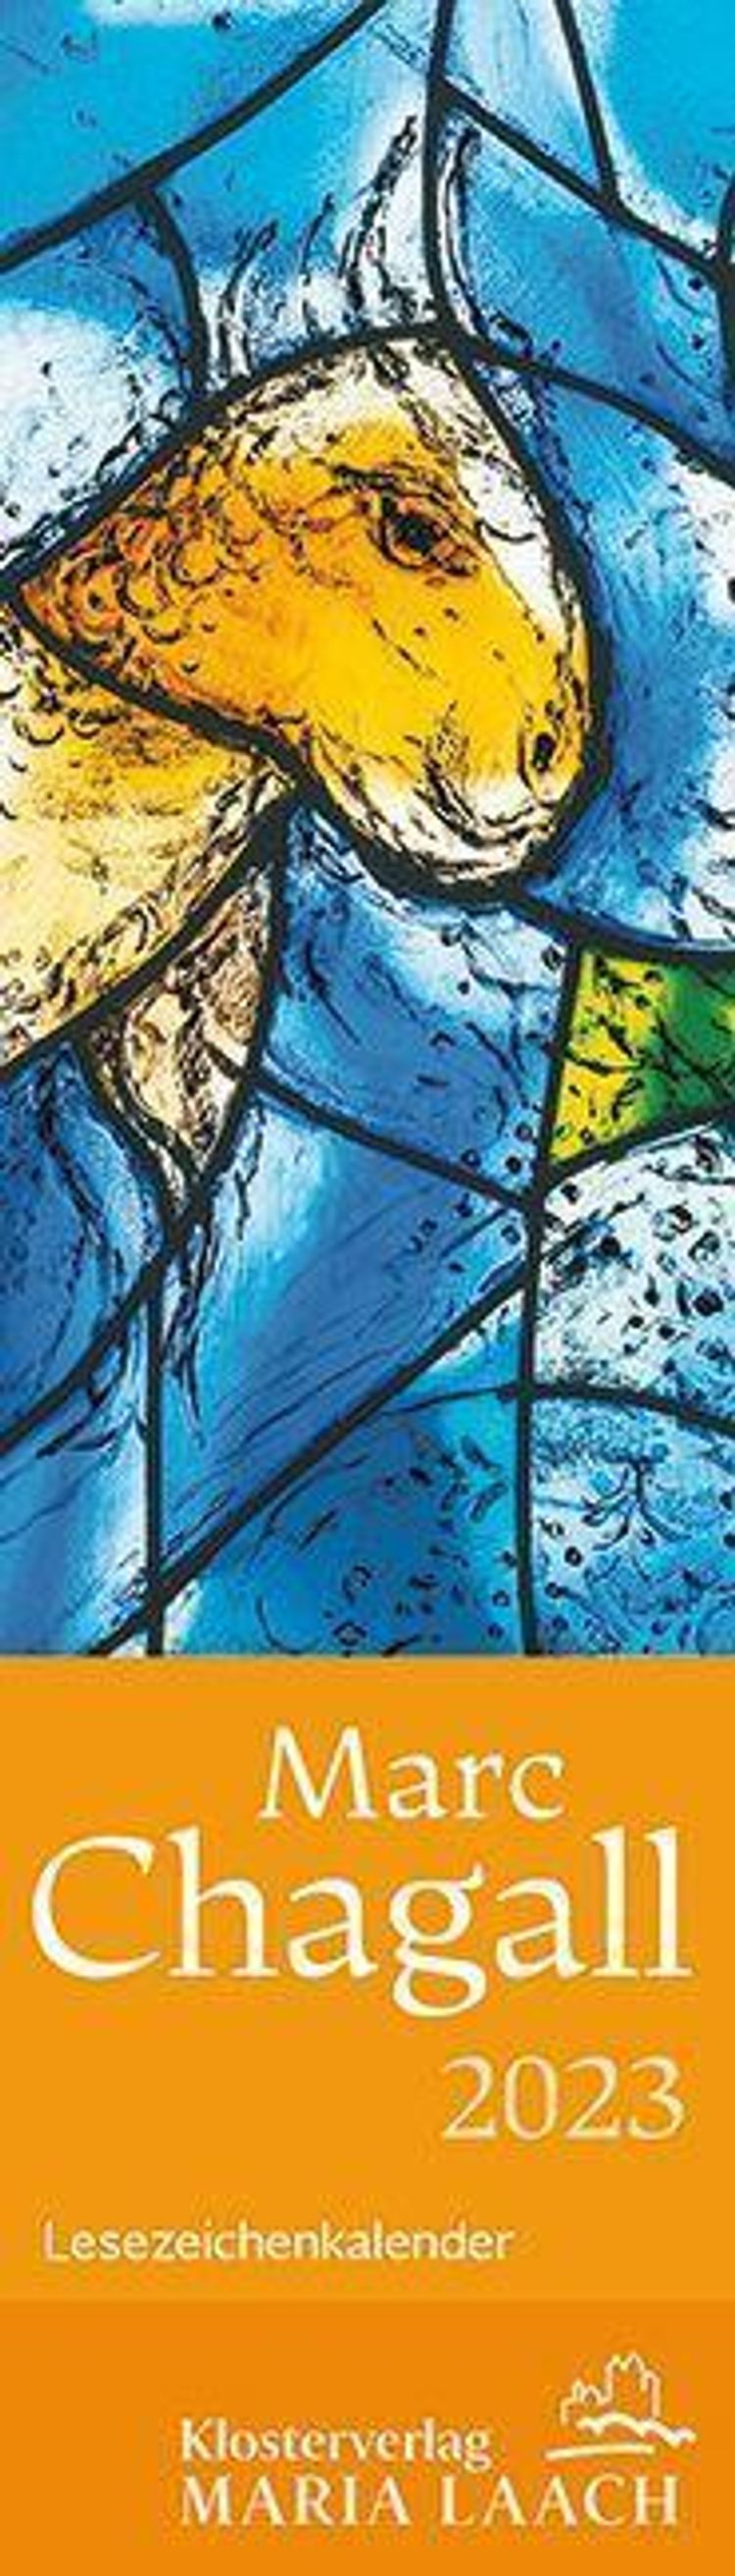 Lesezeichenkalender - Marc Chagall 2023 - Kalender bestellen